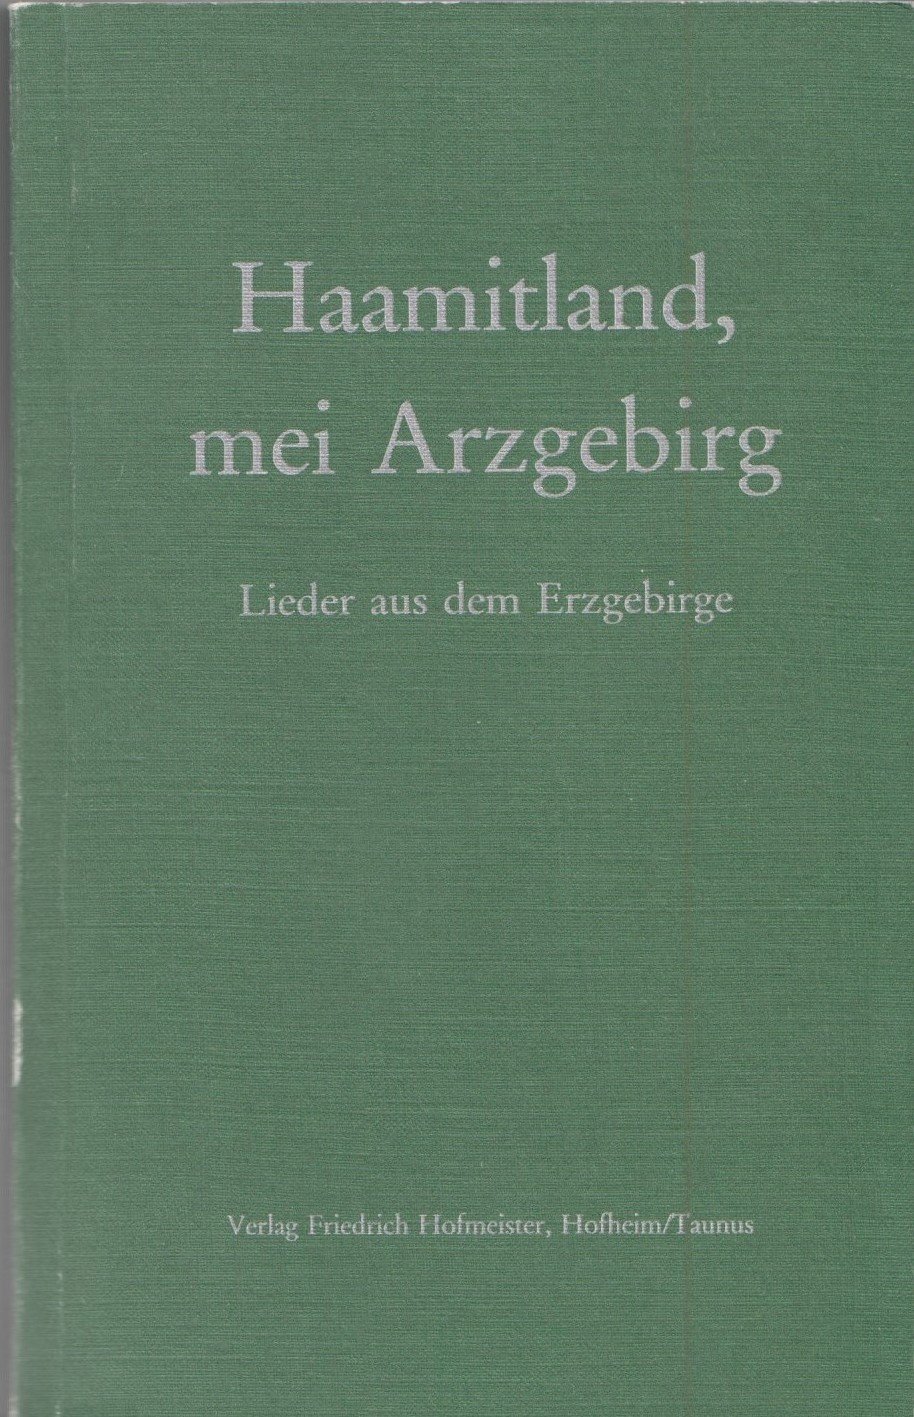 Haamitland, mei Arzgebirg - Lieder aus dem Erzgebirge (Archiv SAXONIA-FREIBERG-STIFTUNG CC BY-NC-SA)